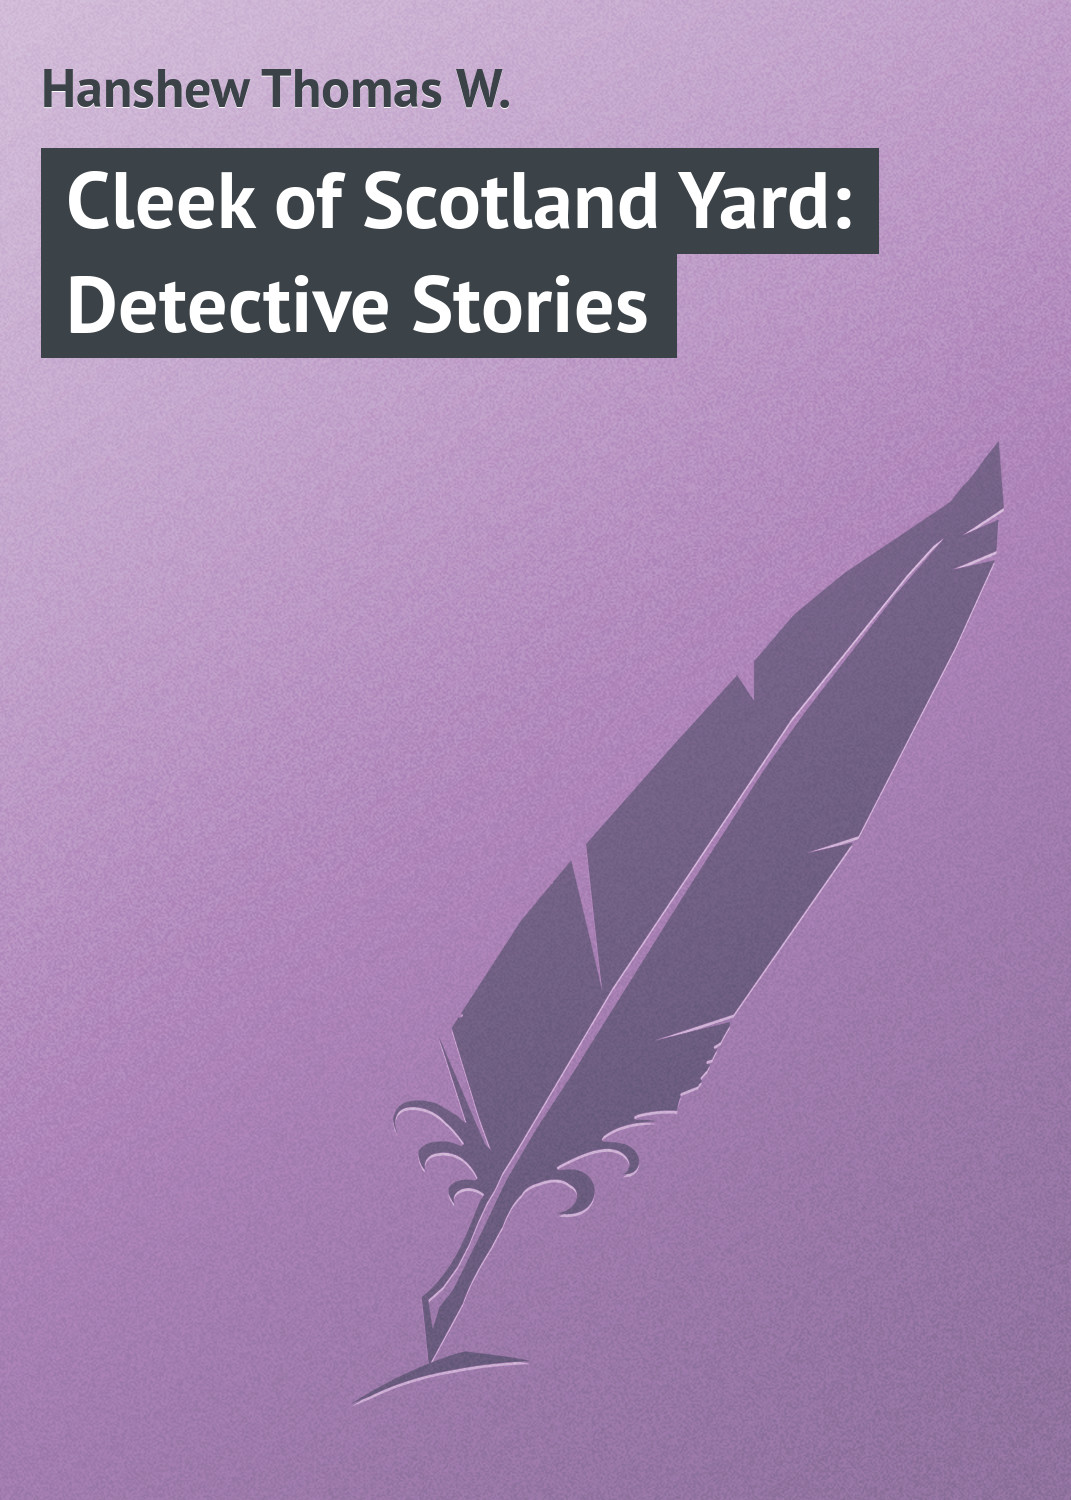 Книга Cleek of Scotland Yard: Detective Stories из серии , созданная Thomas Hanshew, может относится к жанру Классические детективы, Зарубежные детективы, Зарубежная классика. Стоимость электронной книги Cleek of Scotland Yard: Detective Stories с идентификатором 23145155 составляет 5.99 руб.